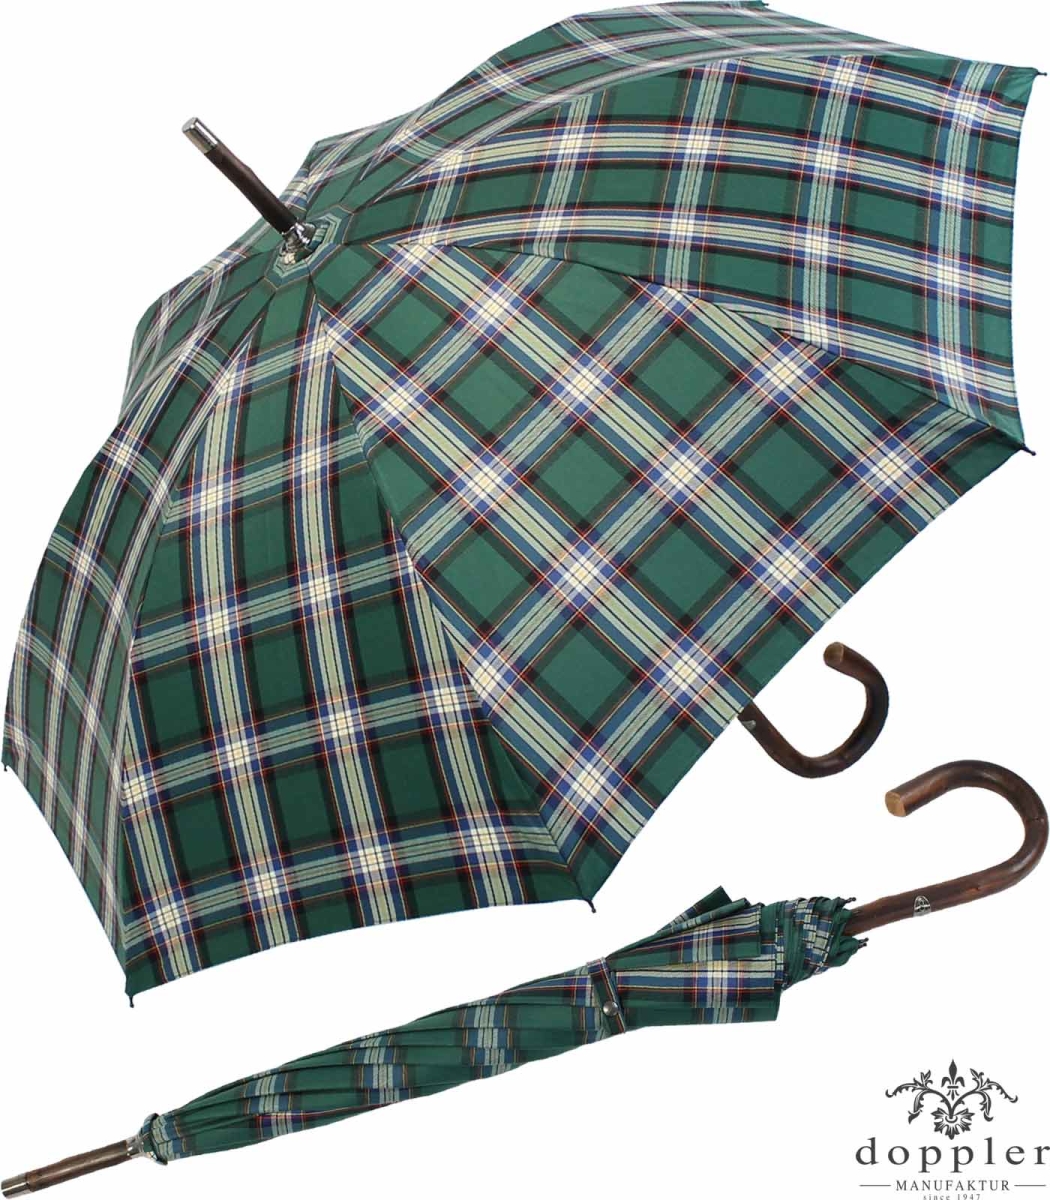 Manufaktur - 219,00 weiss, Kastanie Doppler € Stützschirm grün Regenschirm Karo